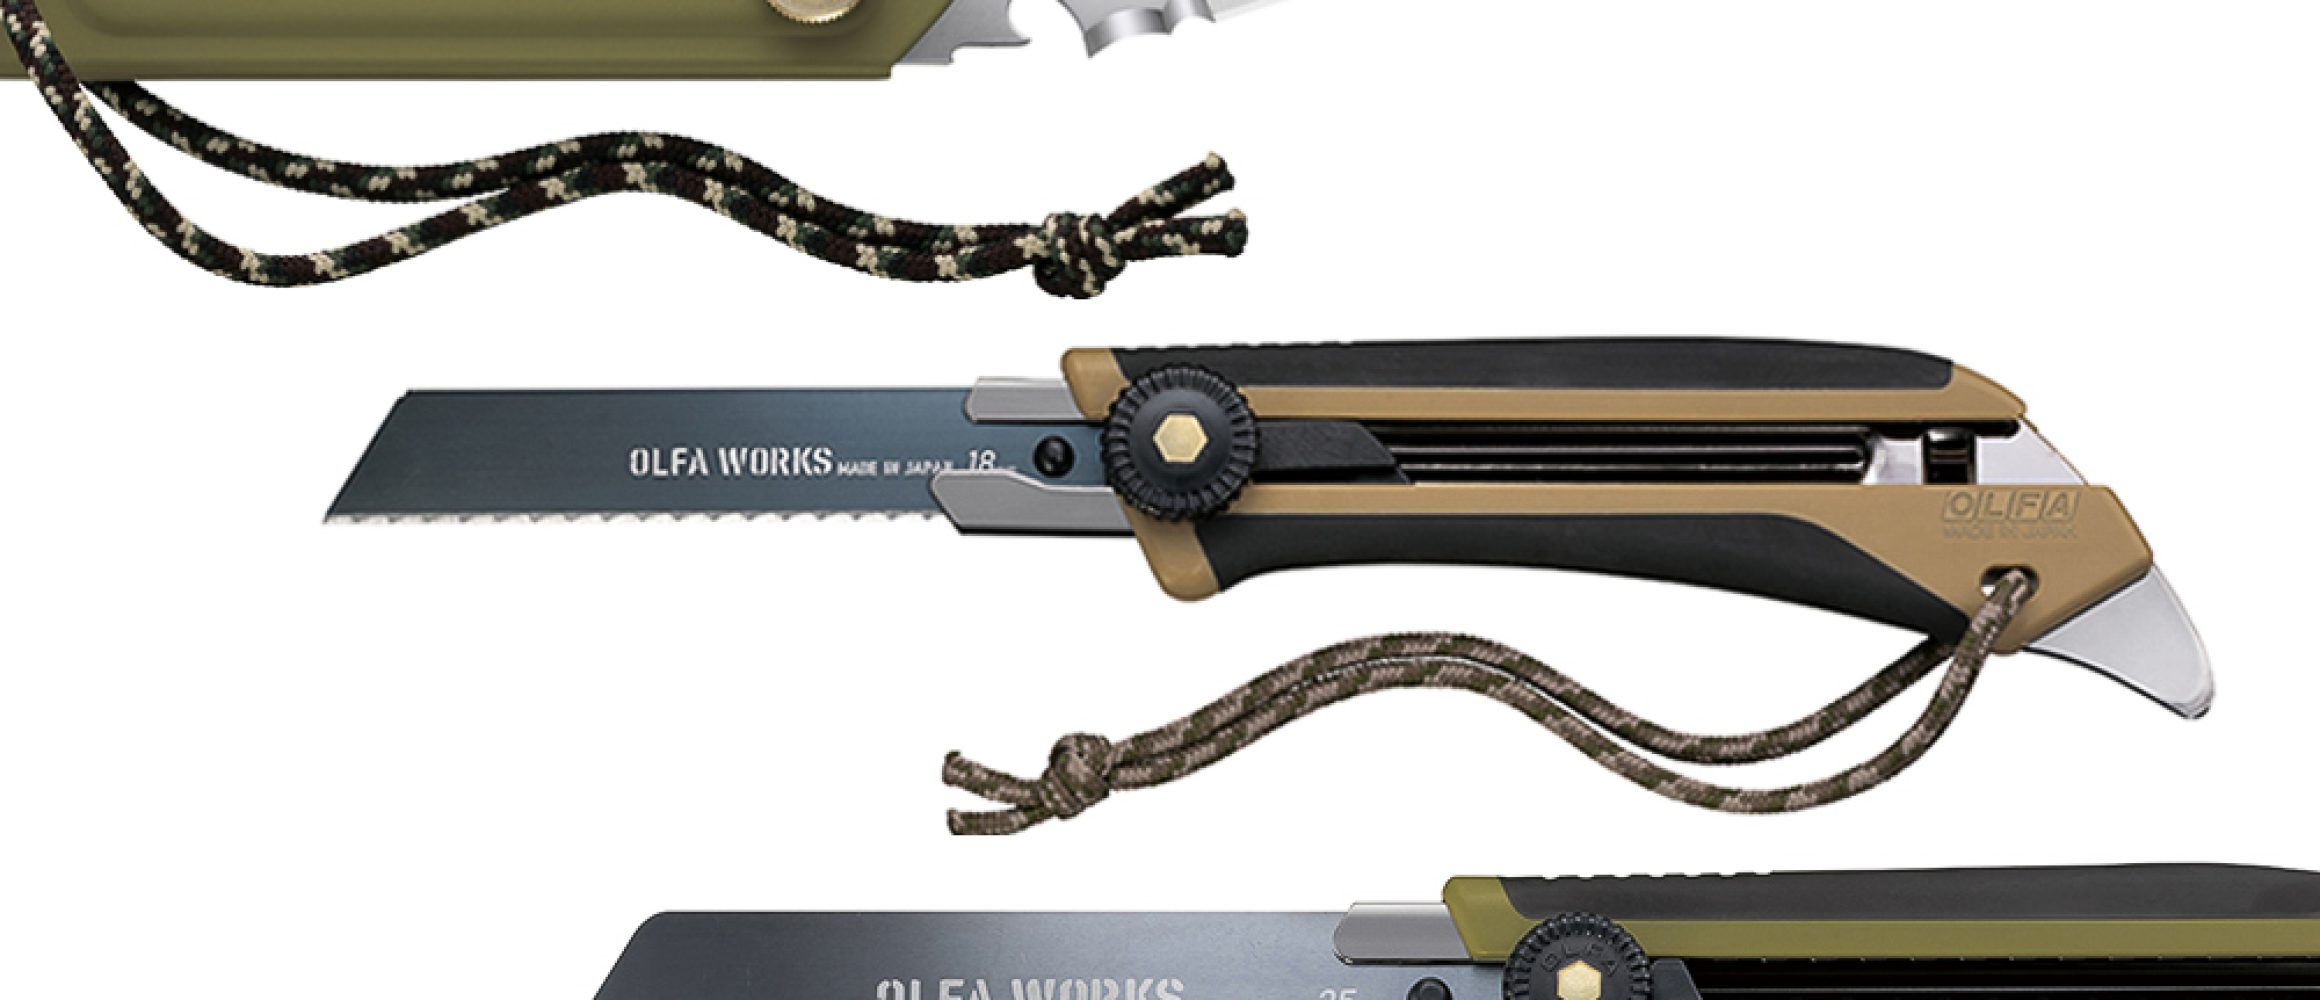 カッター型のアウトドアナイフ!? 替刃式が新しい「OLFA WORKS」の3アイテム。 | アウトドアファッションのGO OUT